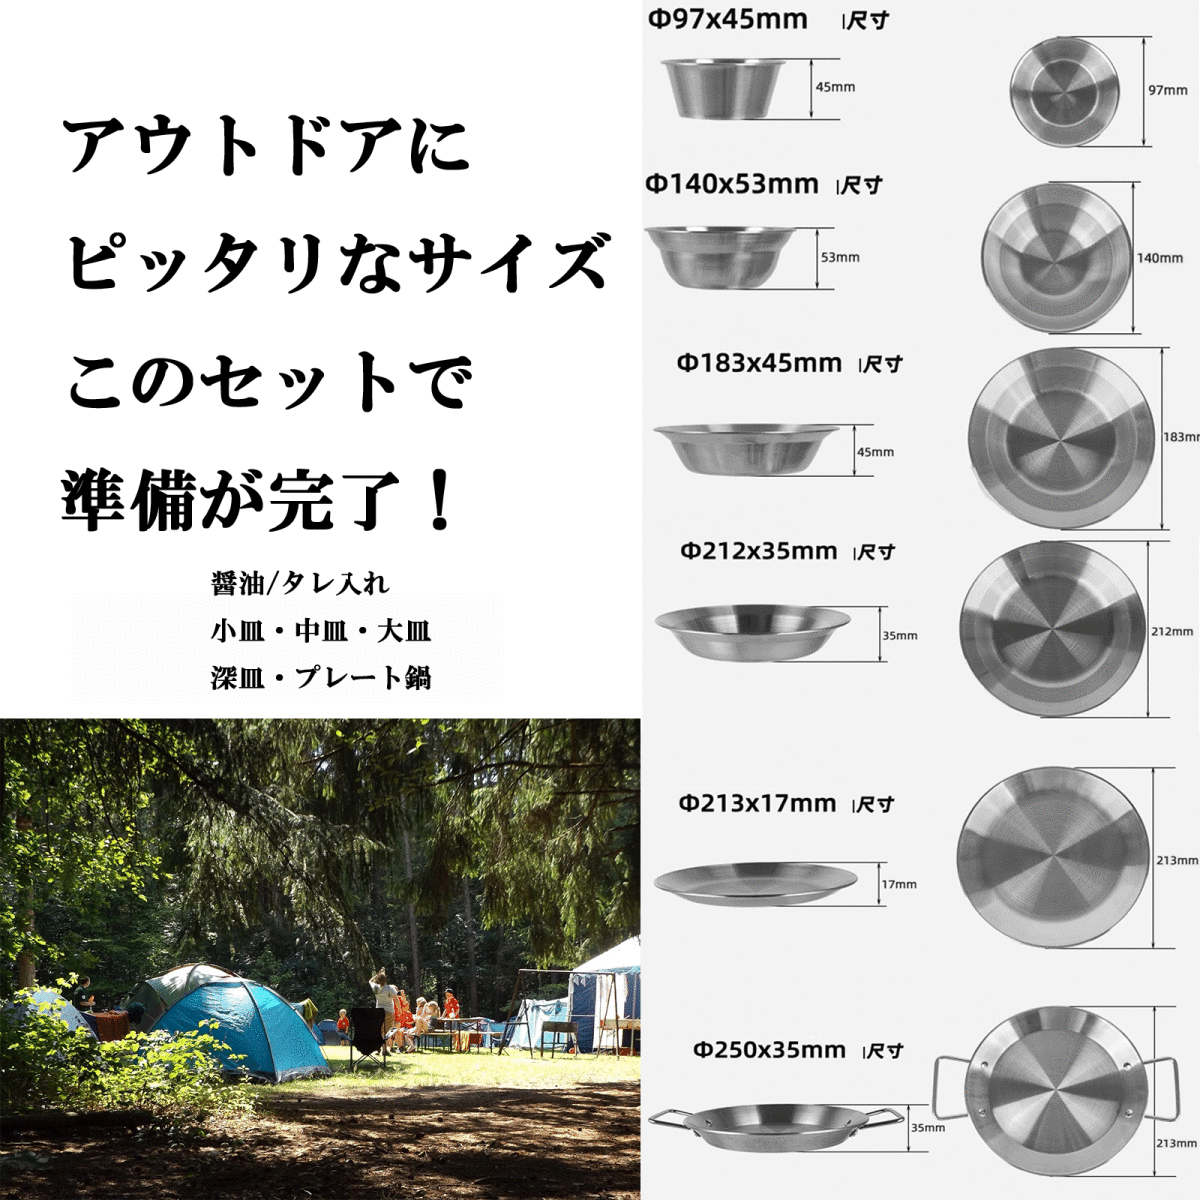 キャンプ用品 キャンプ食器セット キャンプ用品 ステンレス 皿 アウトドア コッヘル クッカーセット バーベキュー BBQ ファミリーセットの画像7